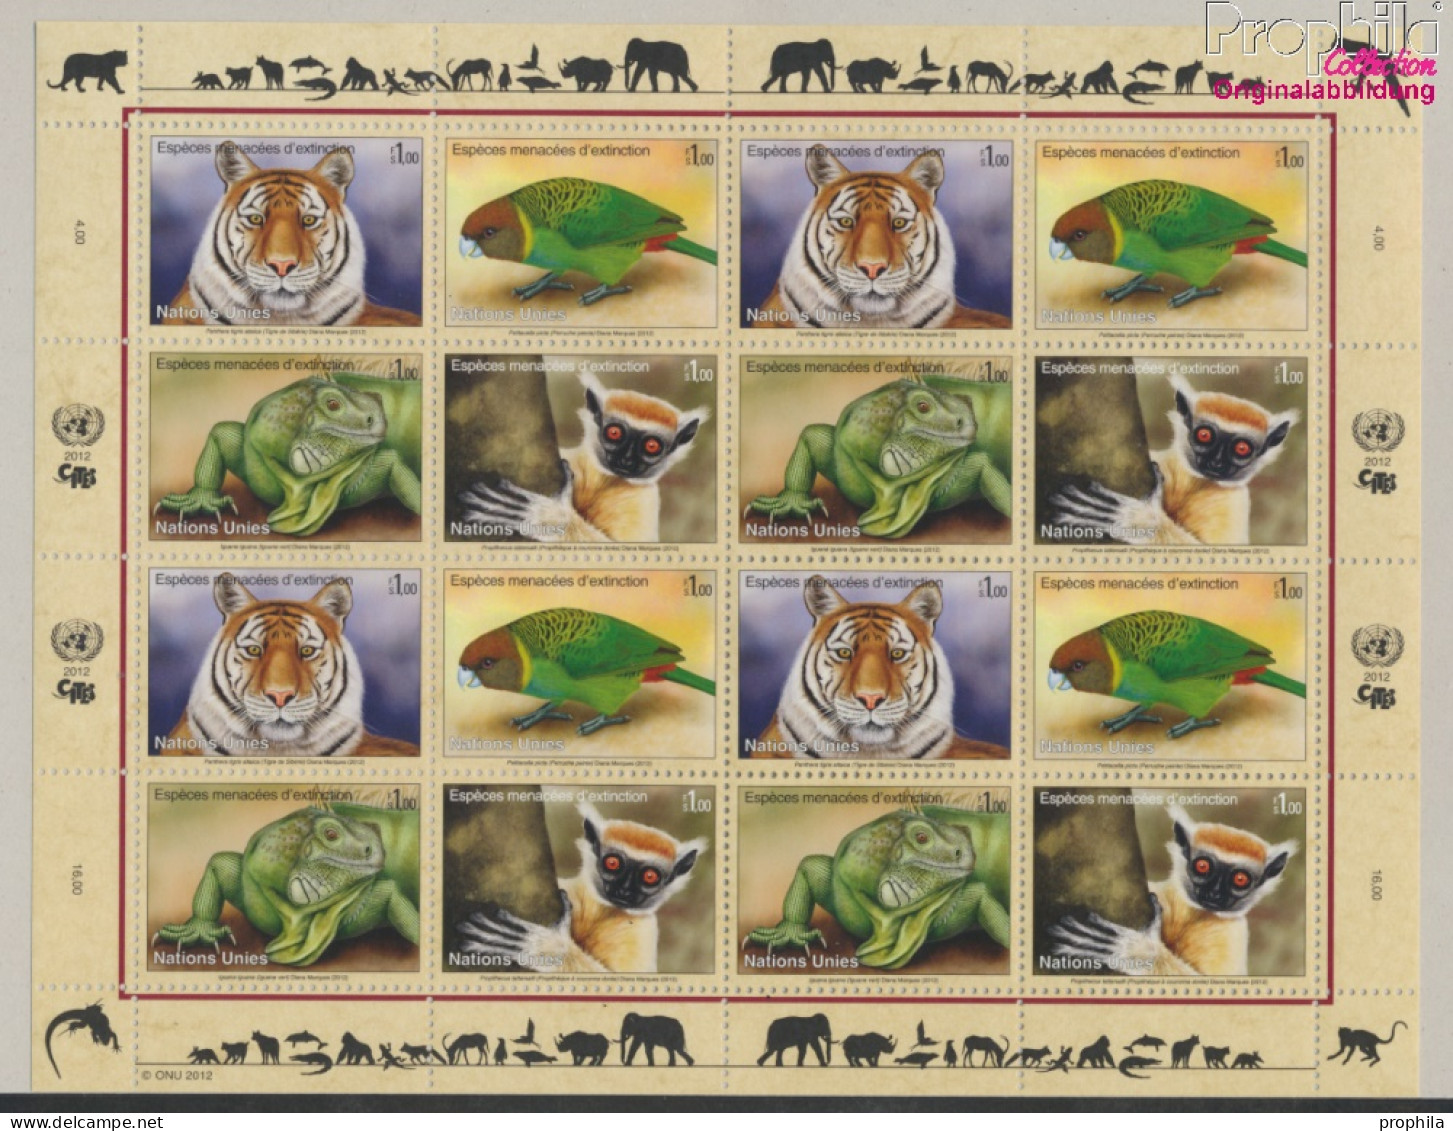 UNO - Genf 790-793Klb Kleinbogen (kompl.Ausg.) Postfrisch 2012 Gefährdete Arten (10050261 - Unused Stamps